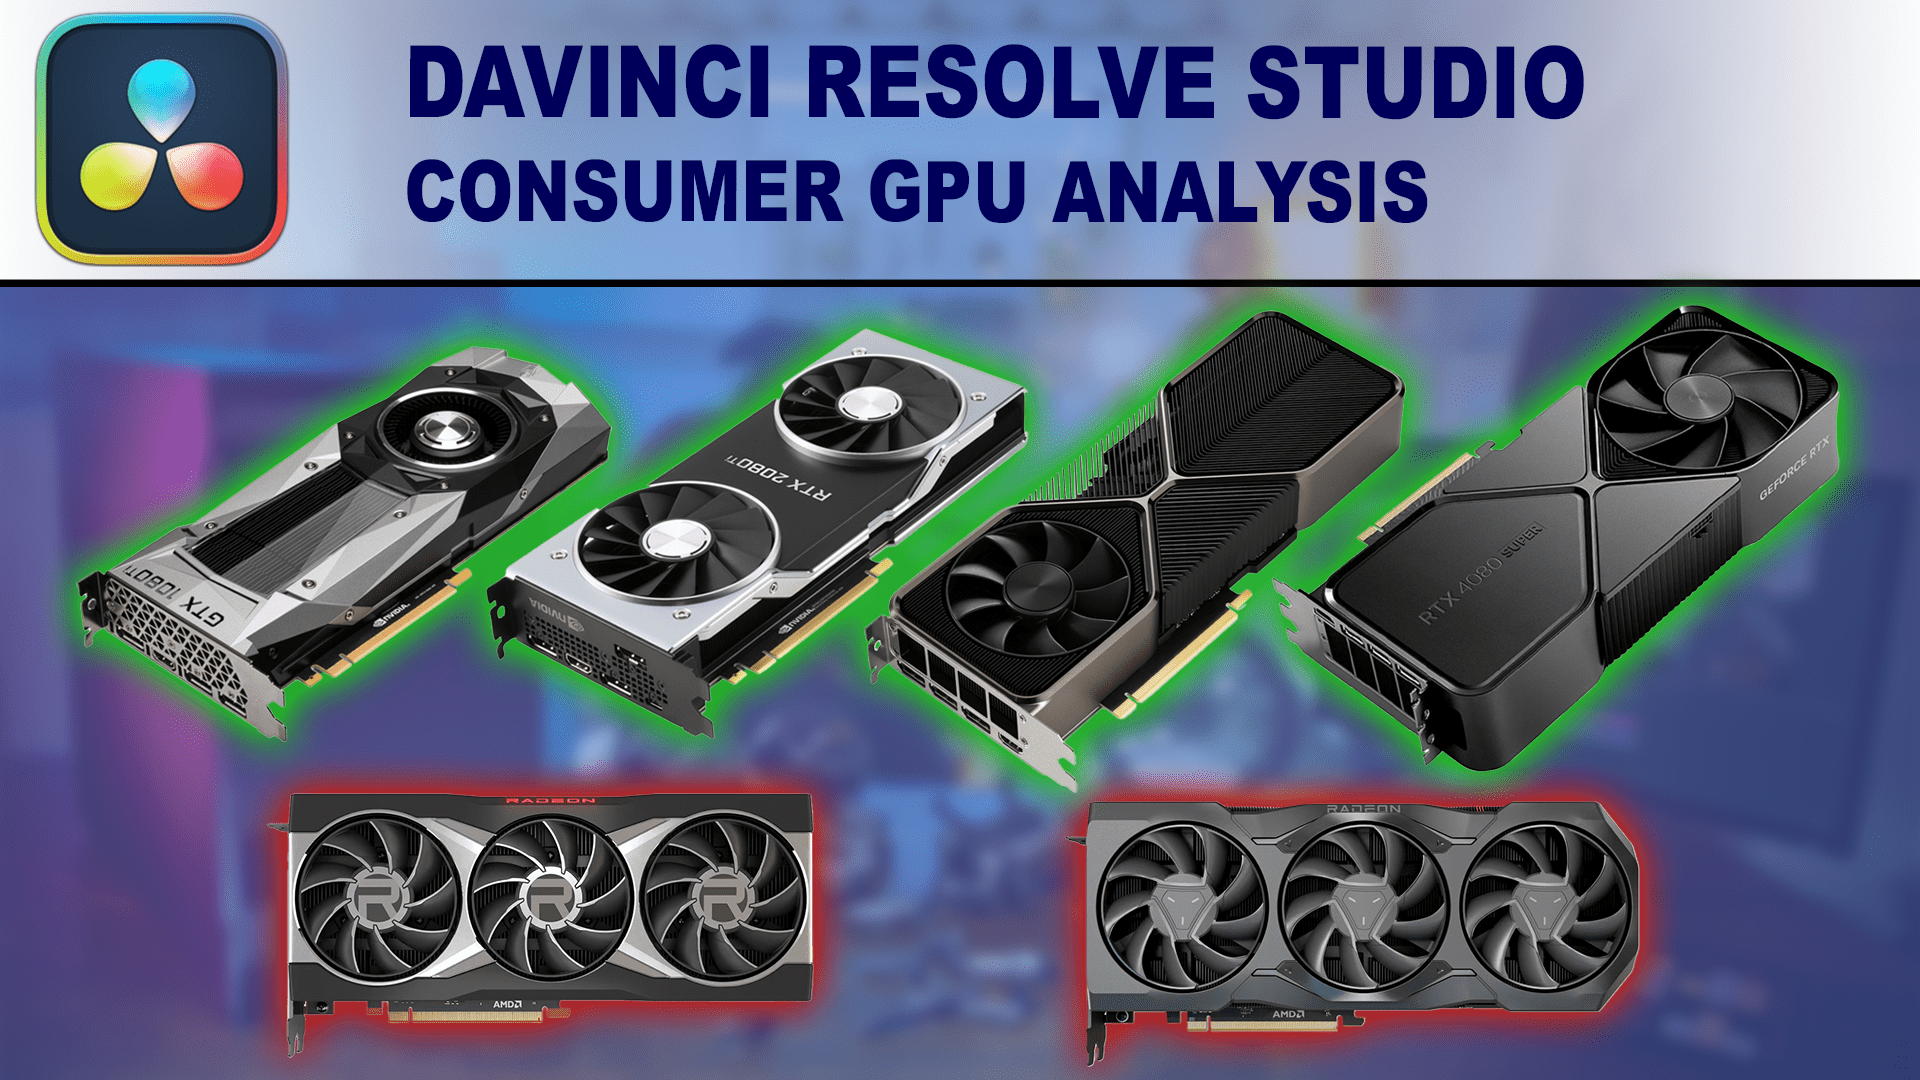 DaVinci Resolve Studio 18.6 Consumer GPU Performance Analysis